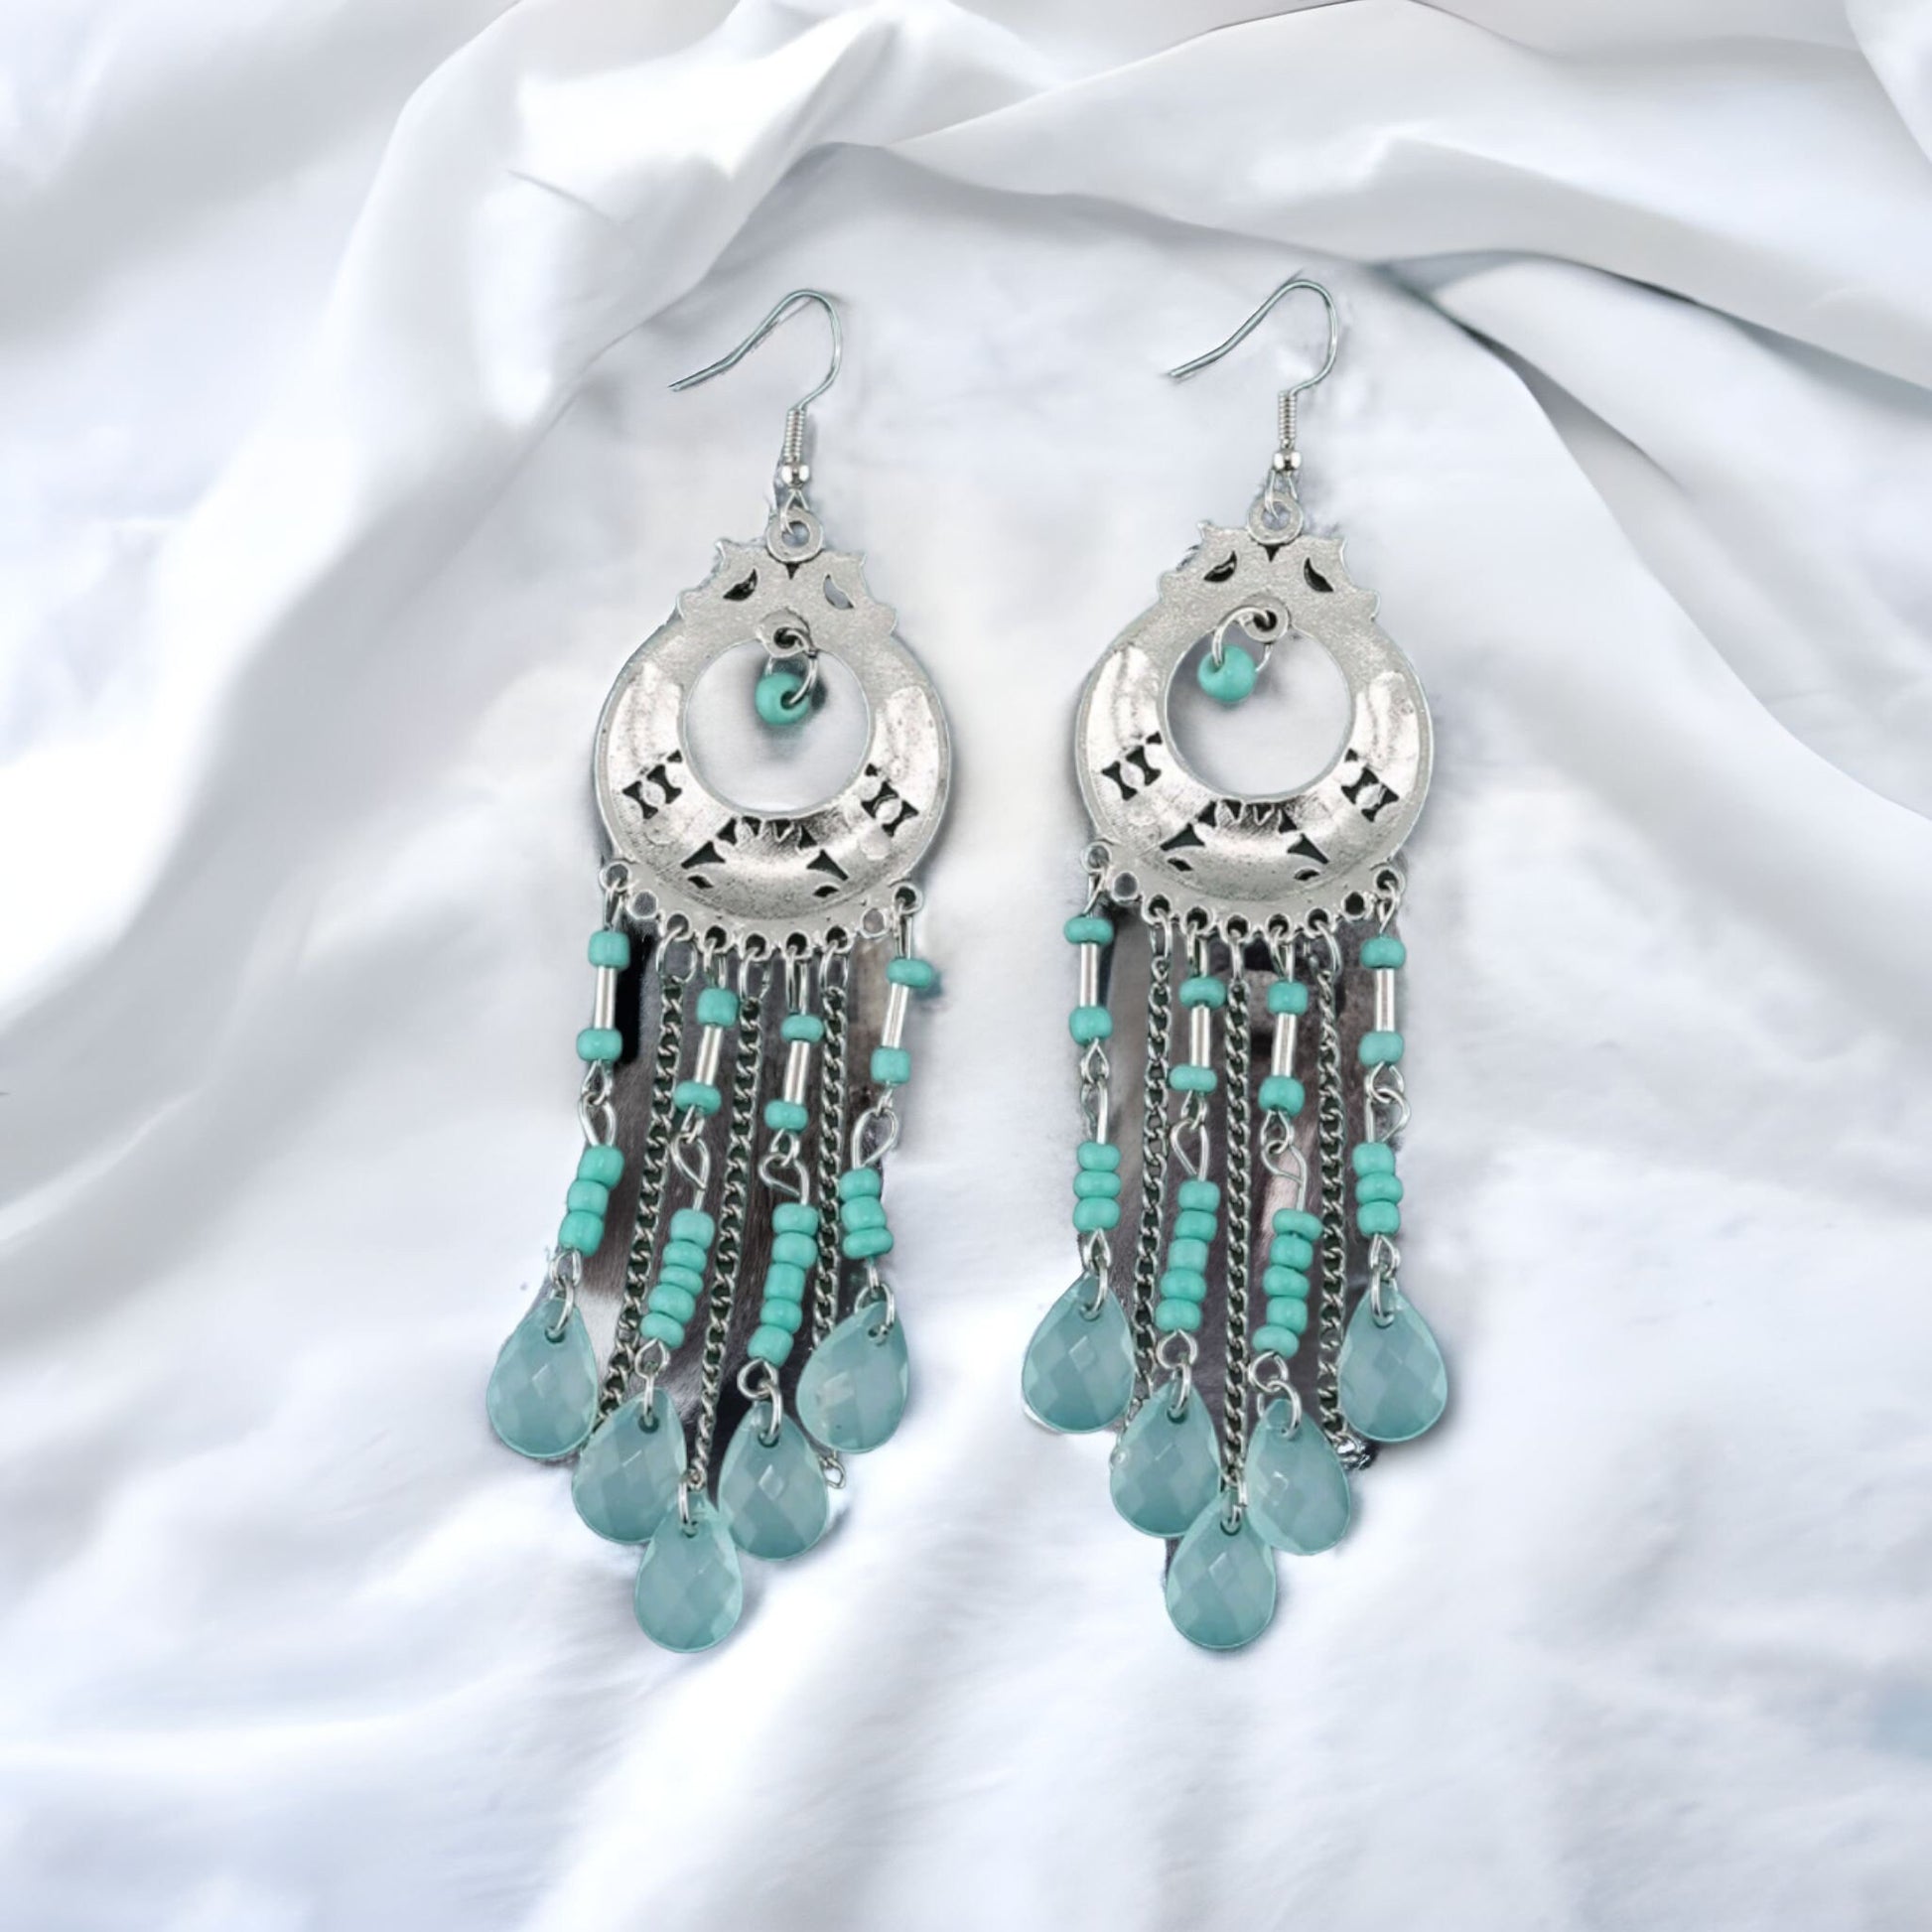 Silver bead earrings dangle drop chandelier